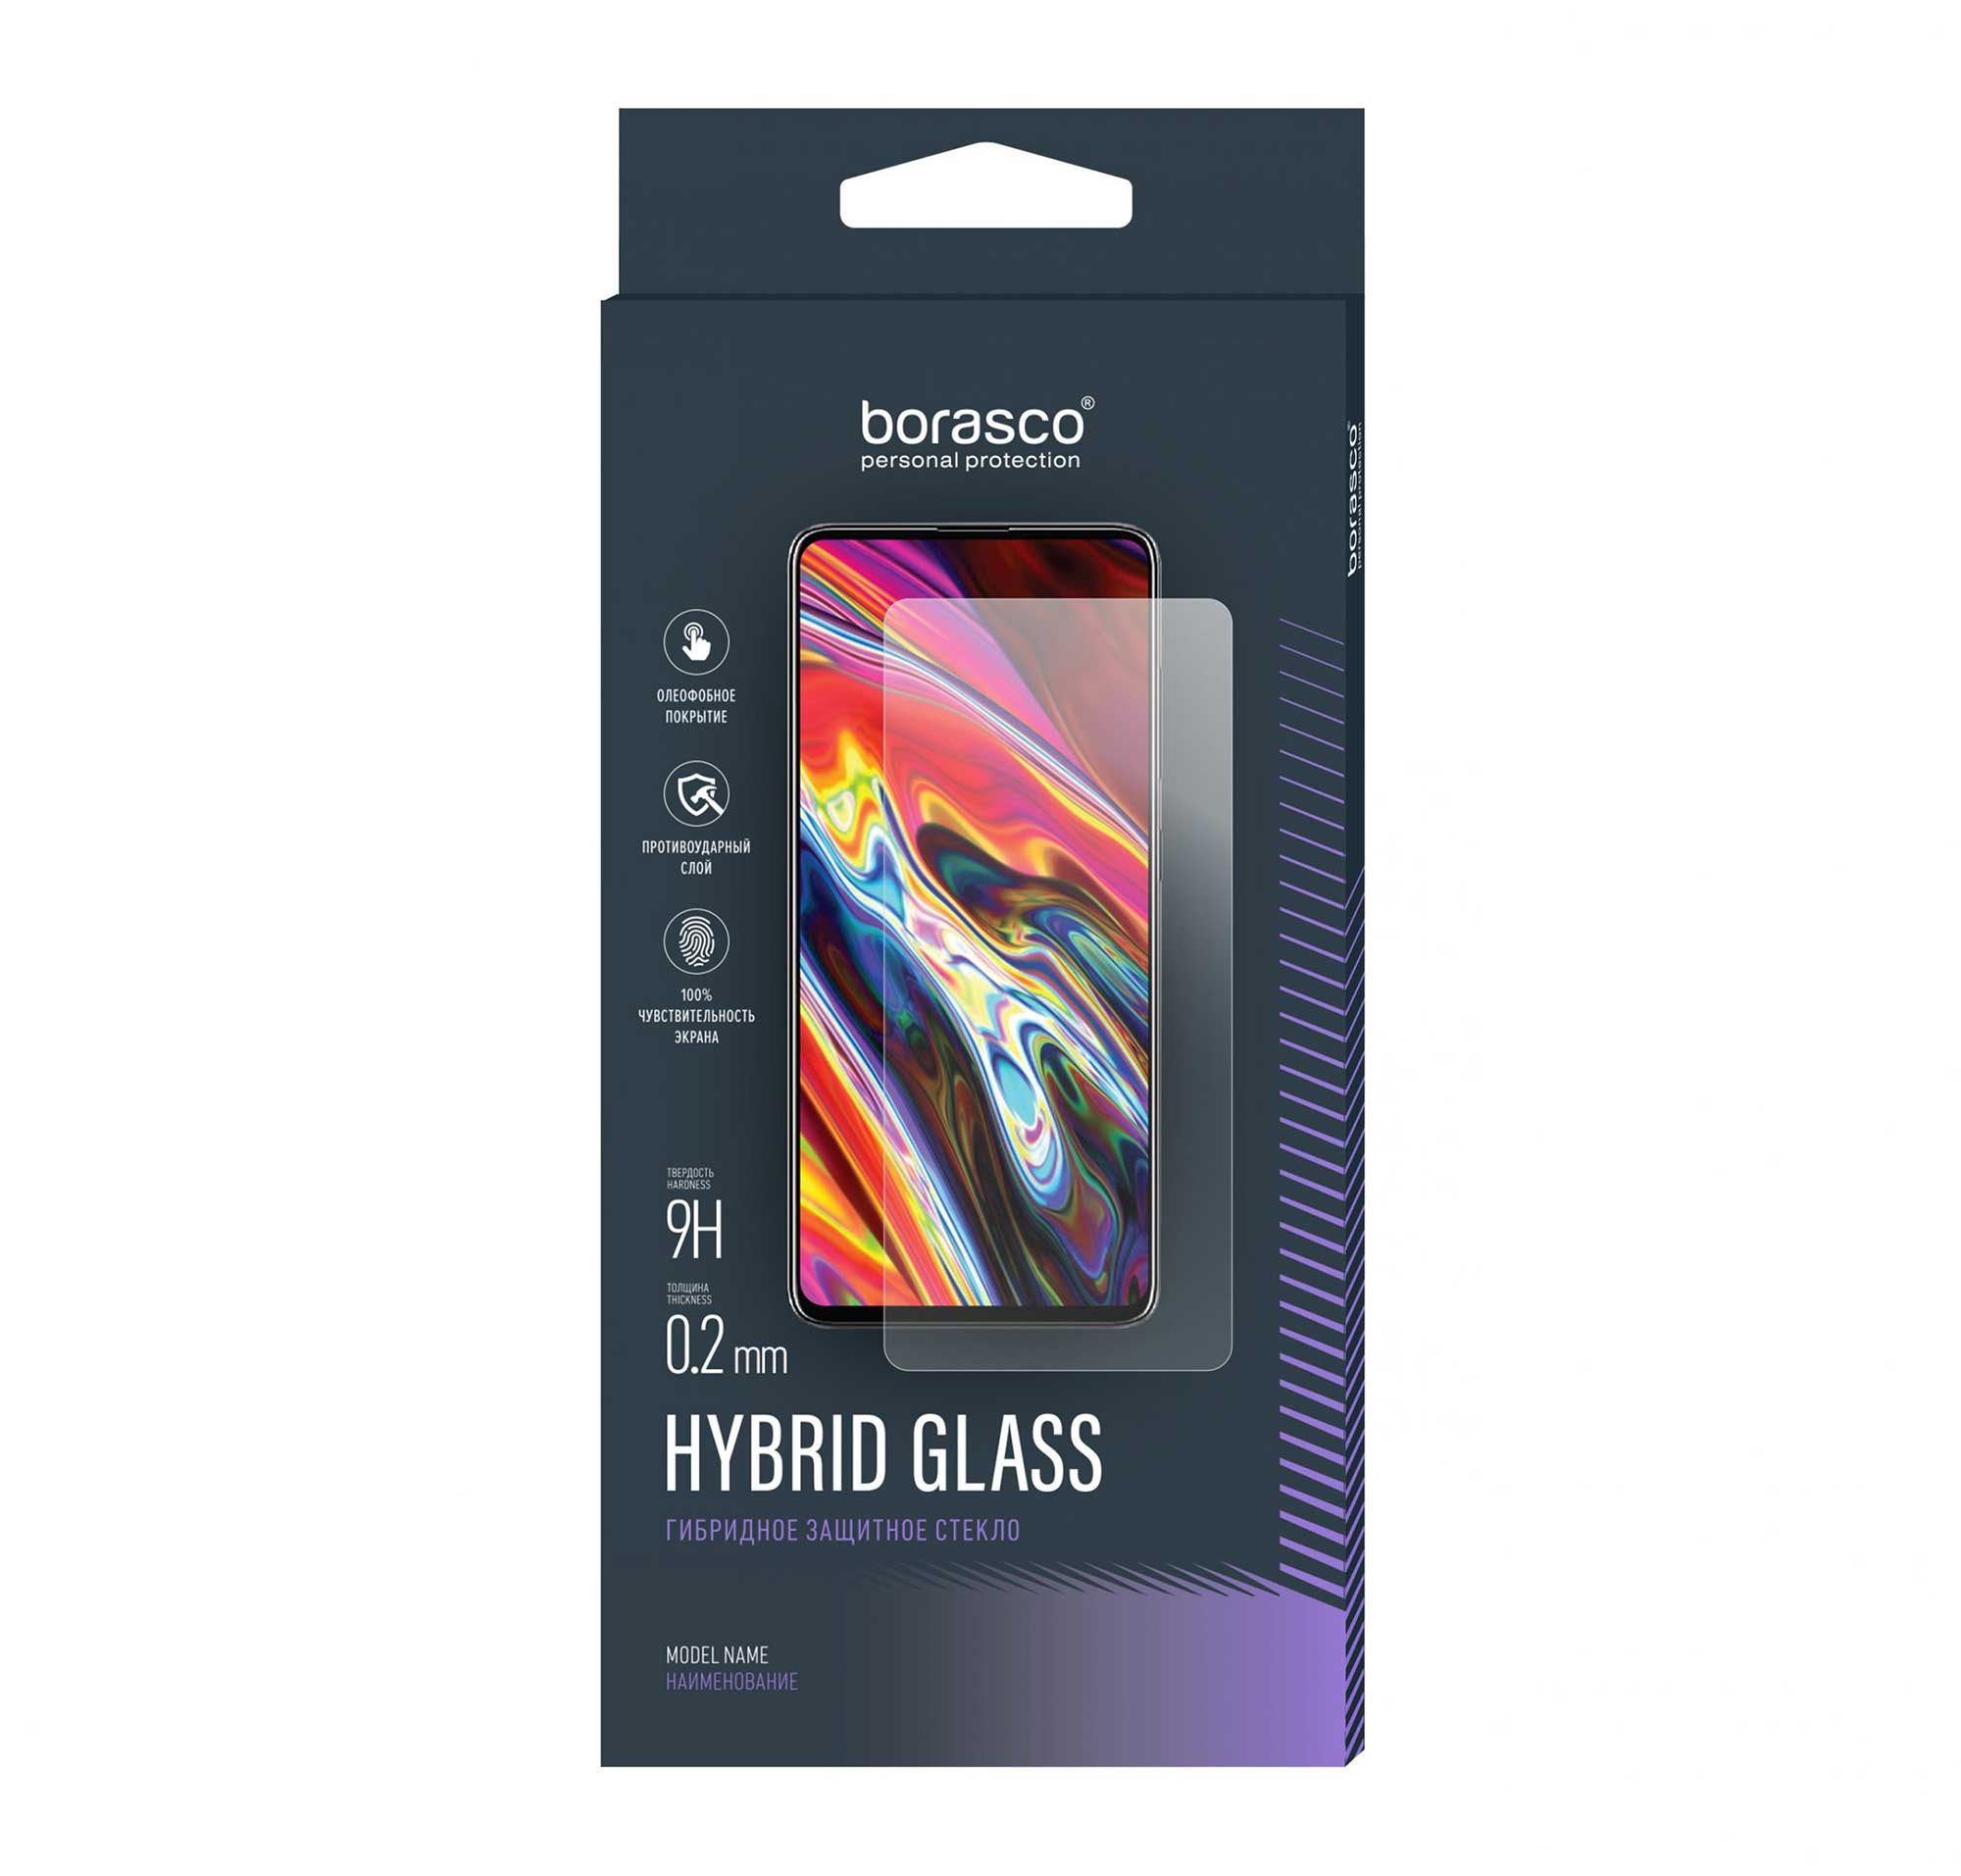 Защитное стекло BoraSCO Hybrid Glass для Nokia 3.1 (2018) 5.2 защитное стекло lg k8 2018 k10 2018